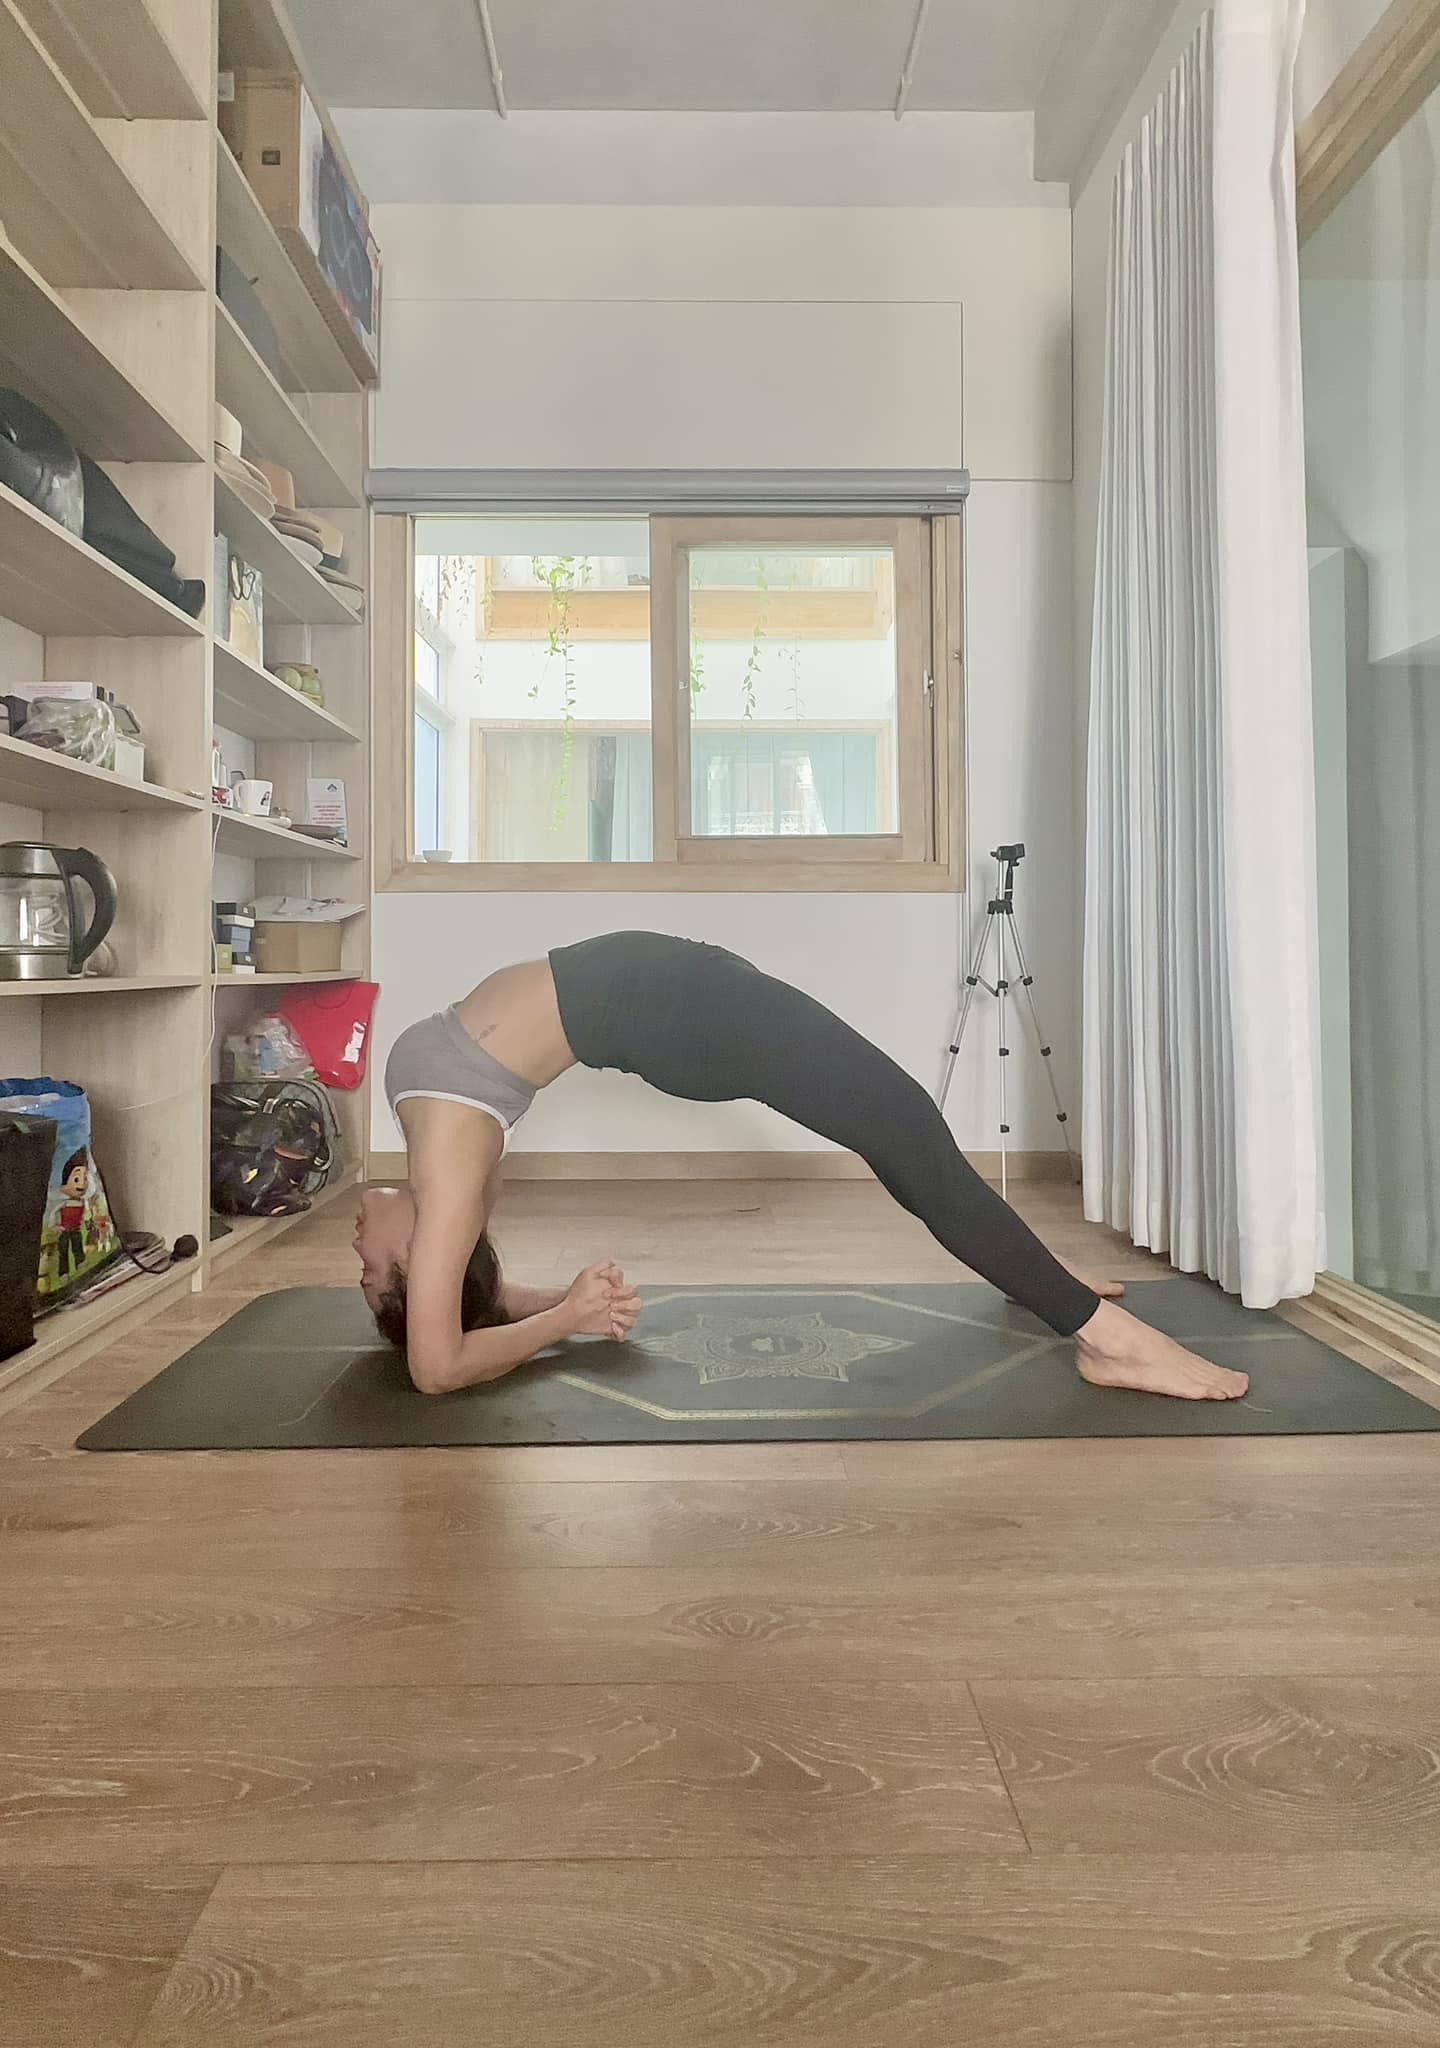 Phương Trinh Jolie cho biết việc tập luyện yoga giúp cô giảm đau lưng và dễ dàng hơn trong quá trình sinh đẻ về sau